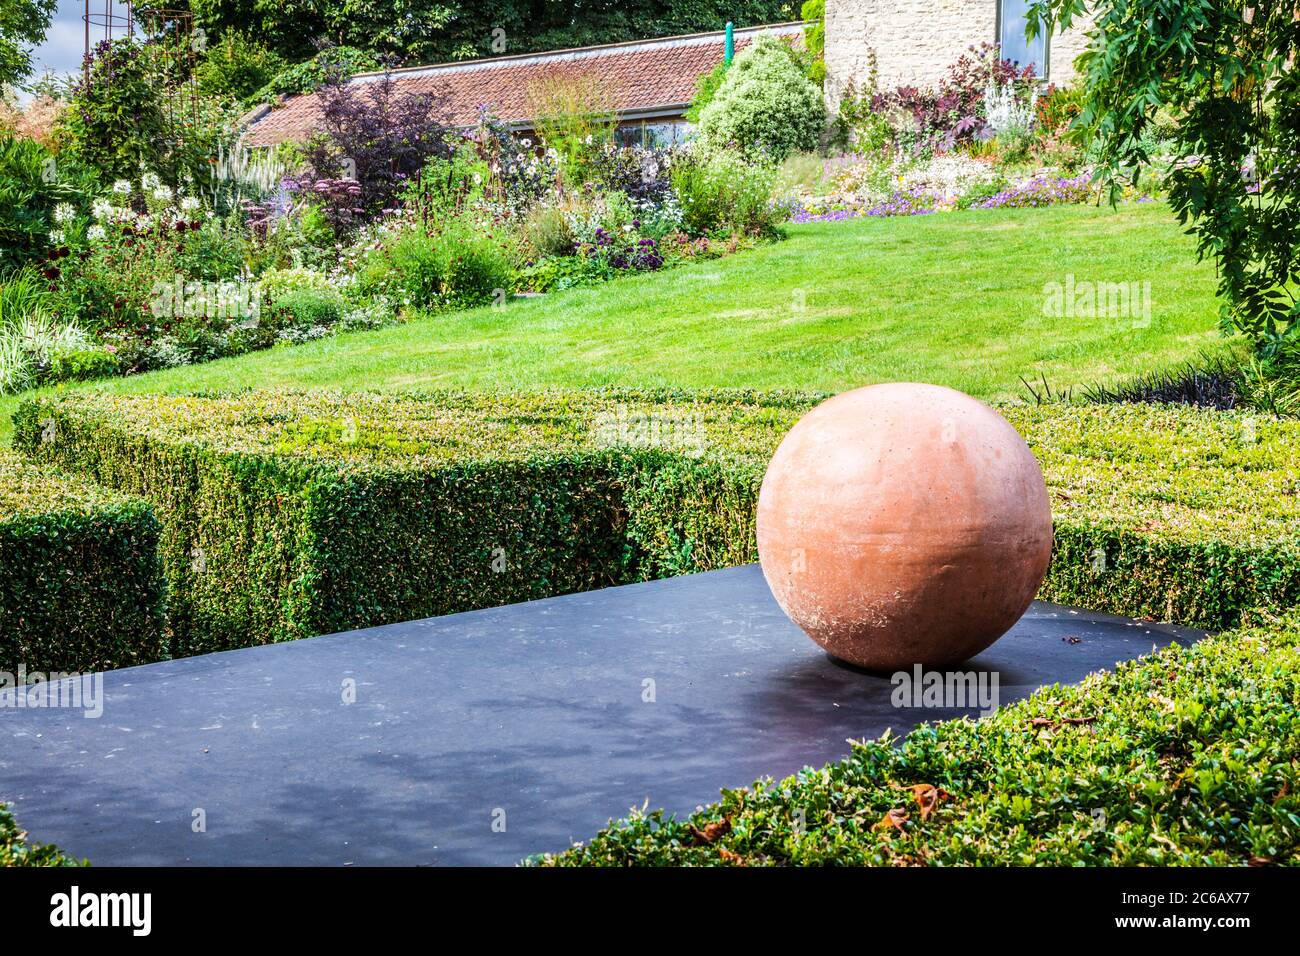 Un pedazo de arte moderno del jardín en un jardín inglés del campo. Foto de stock